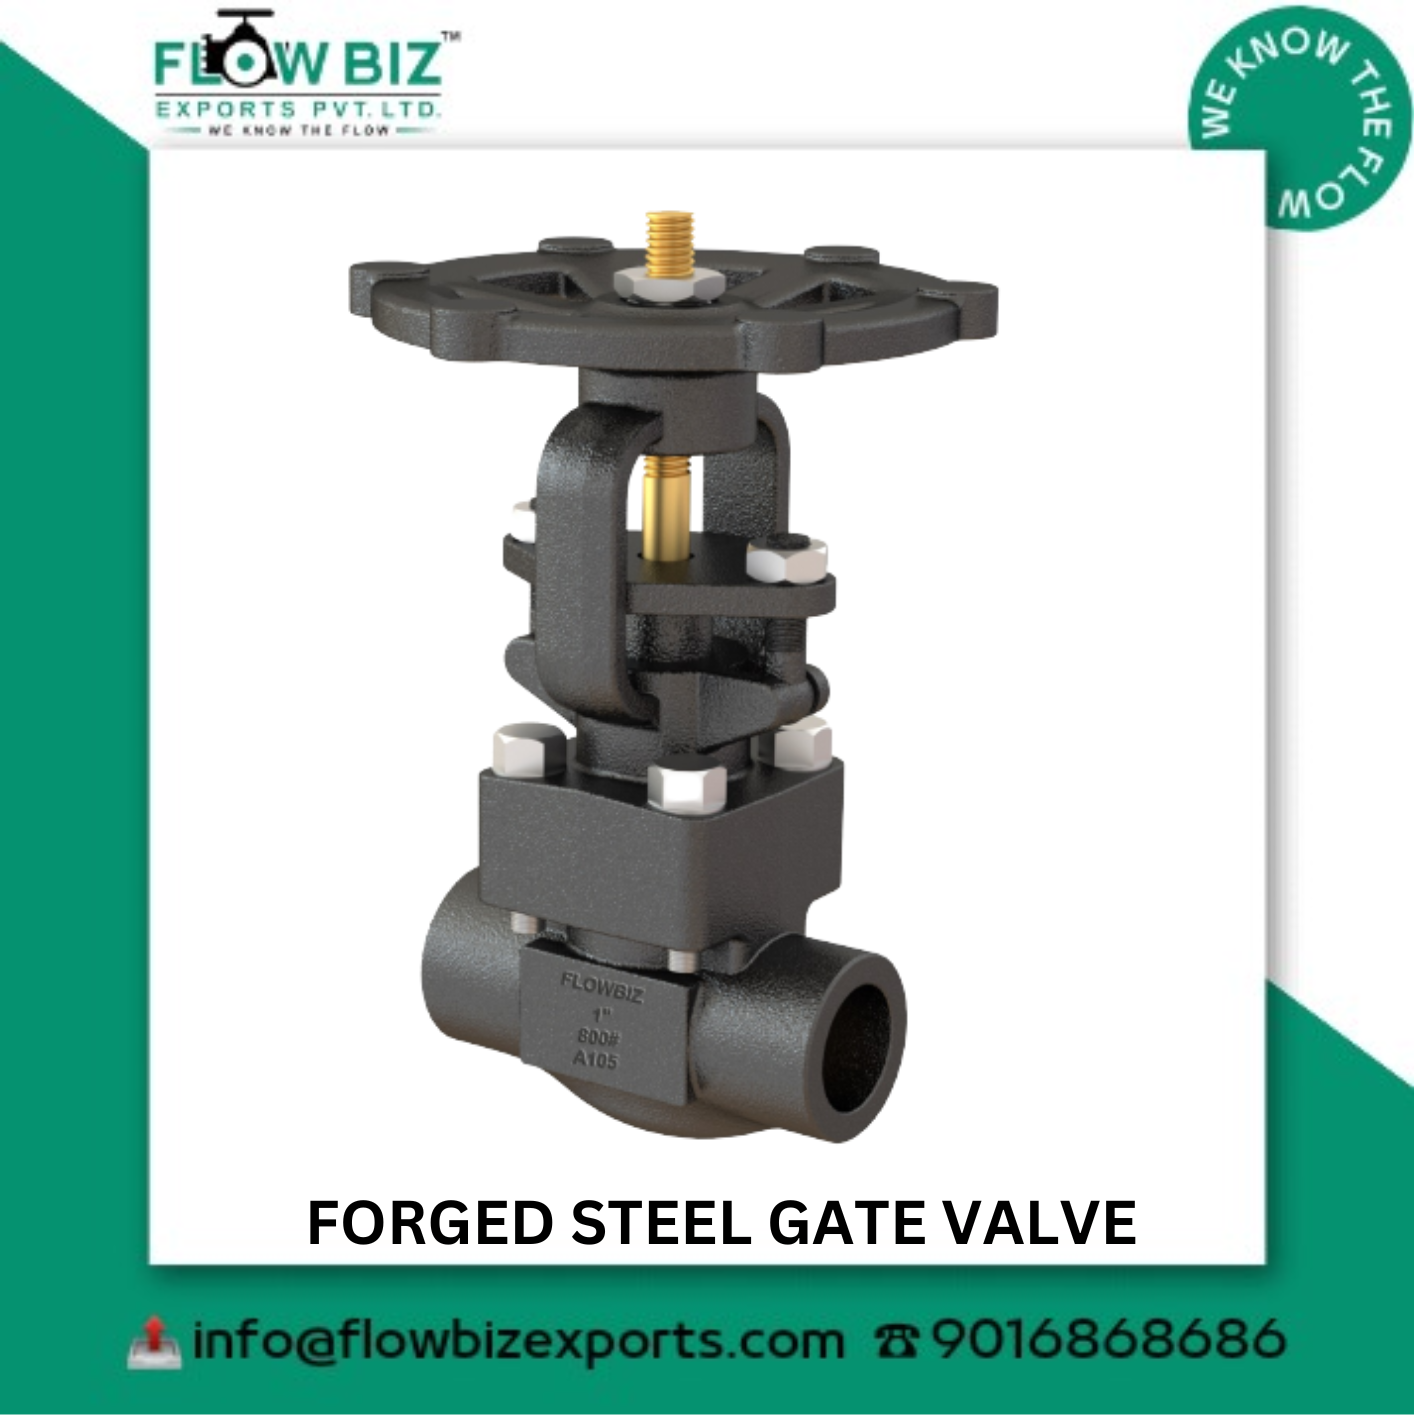 forged steel gate valve manufacturer pune - Flowbiz